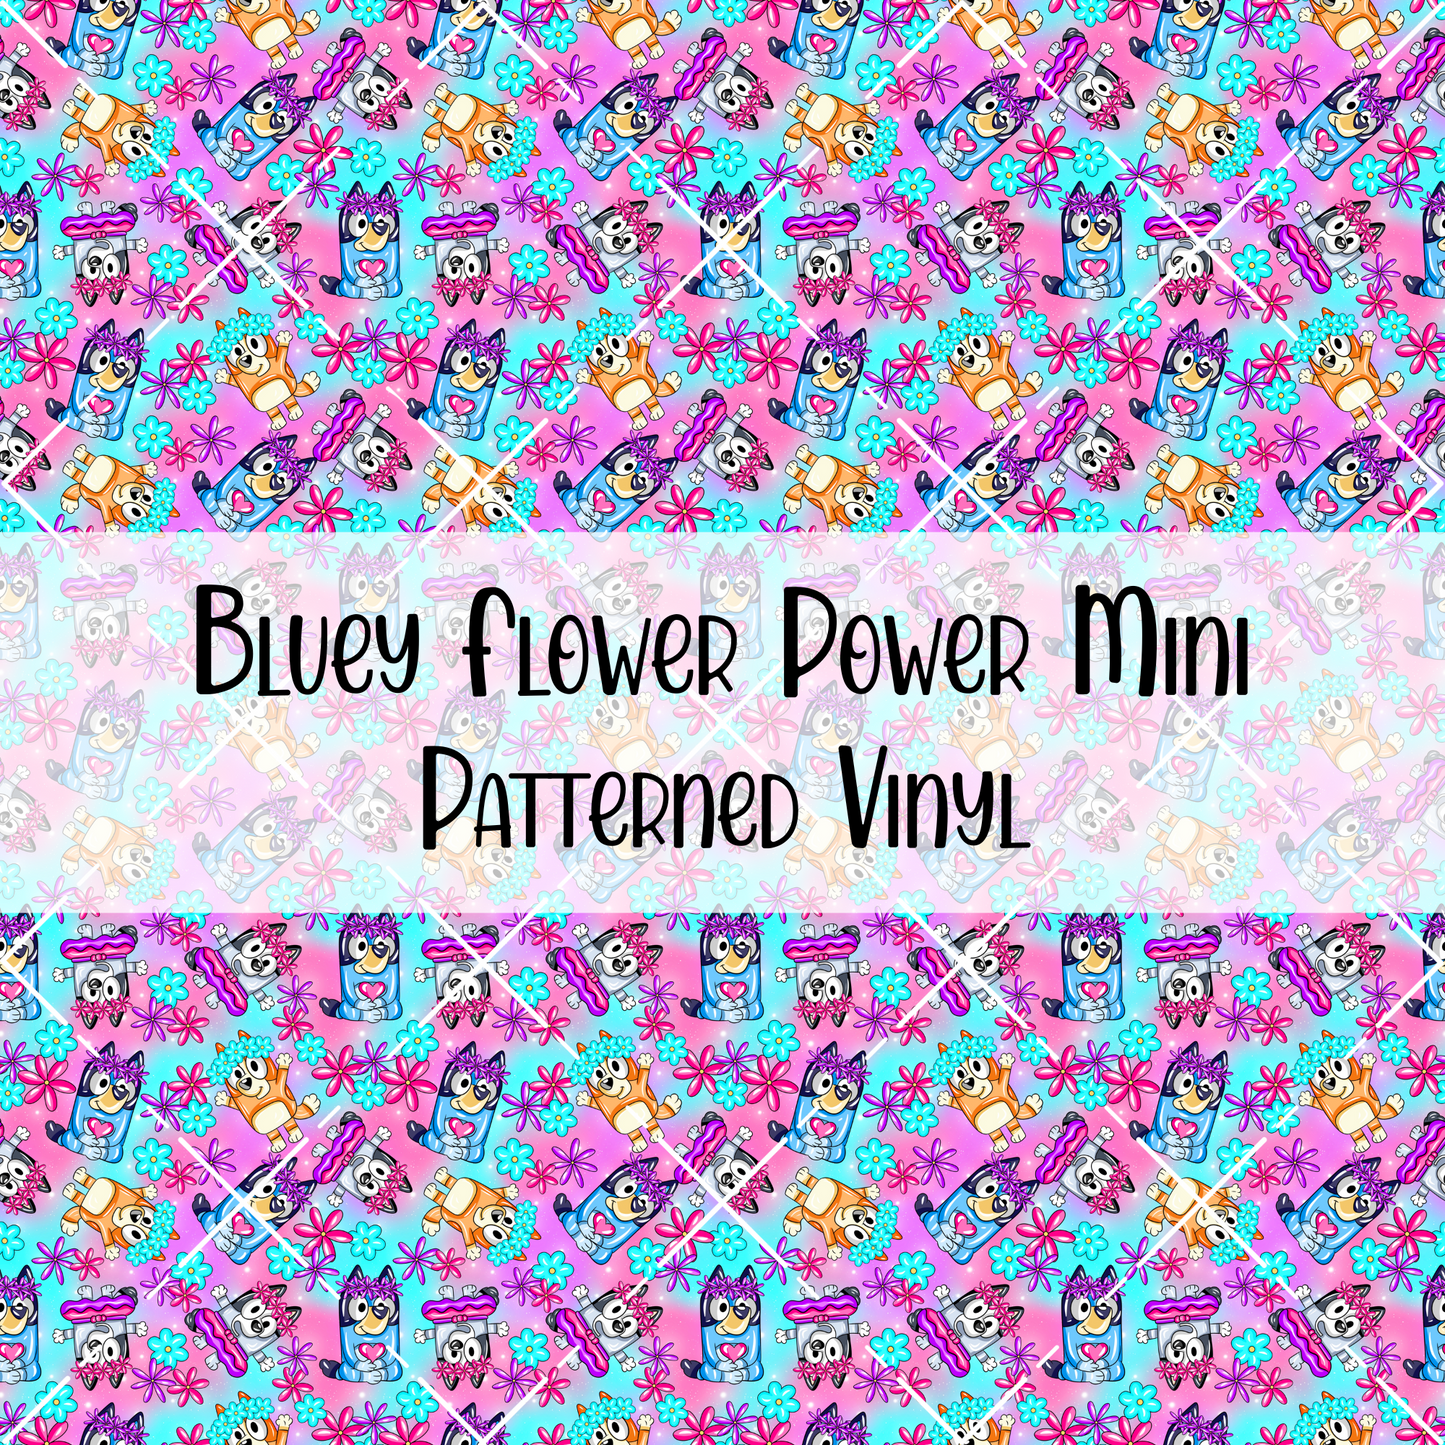 Bluey Flower Power Patterned Vinyl